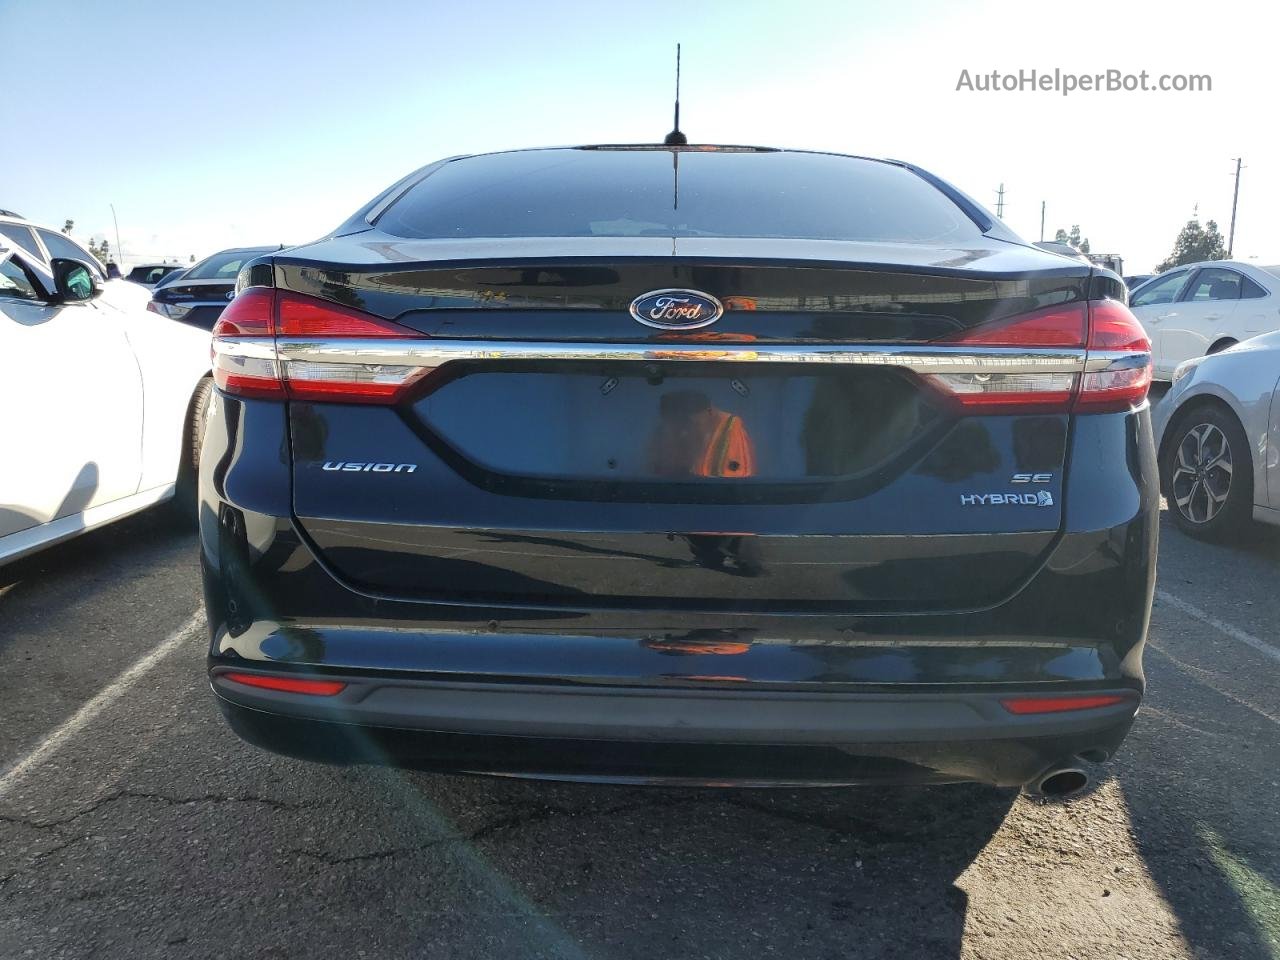 2018 Ford Fusion Se Hybrid Black vin: 3FA6P0LUXJR285415